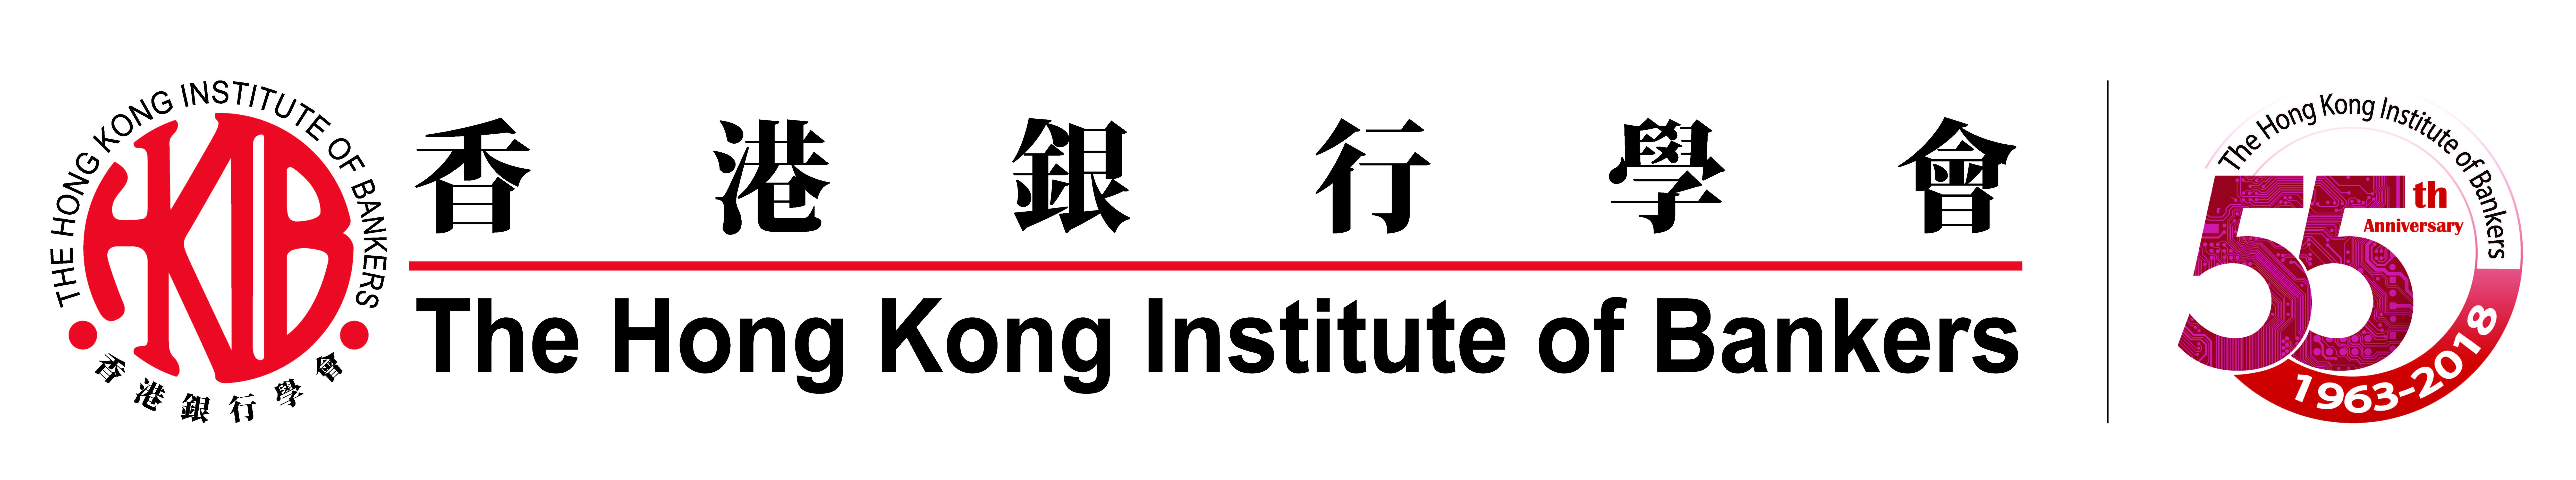 HKIB Logo (full) + 55th logo